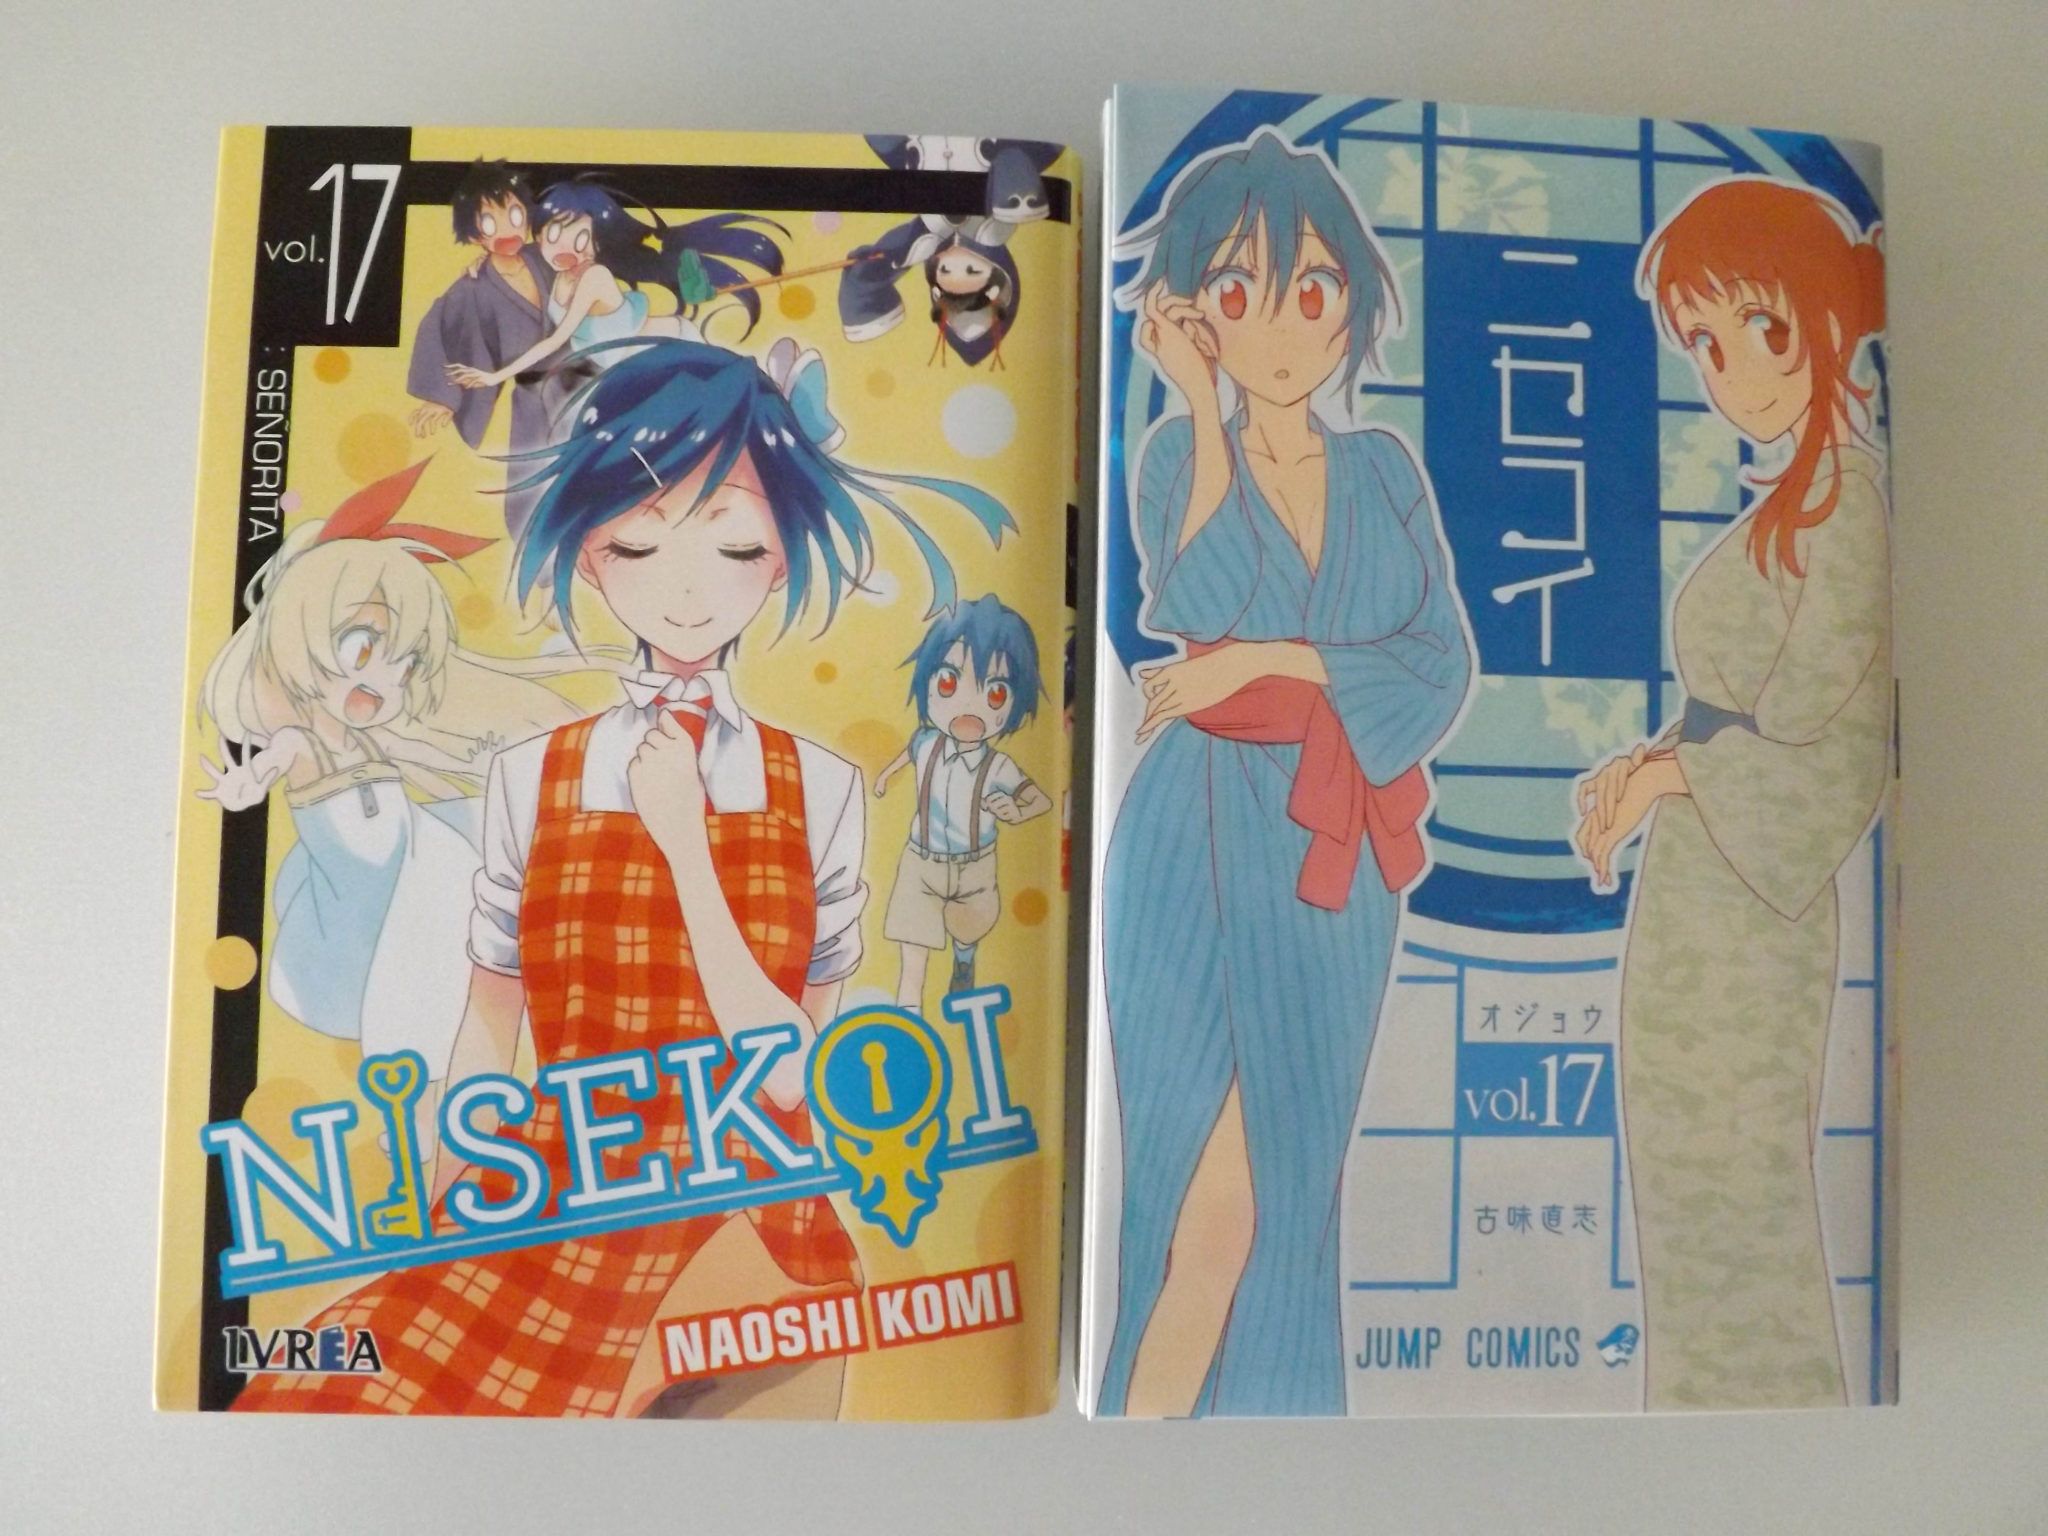 Izquierda: Tomo #17 edición española. Derecha: Tomo #17 Edición limitada edición japonesa